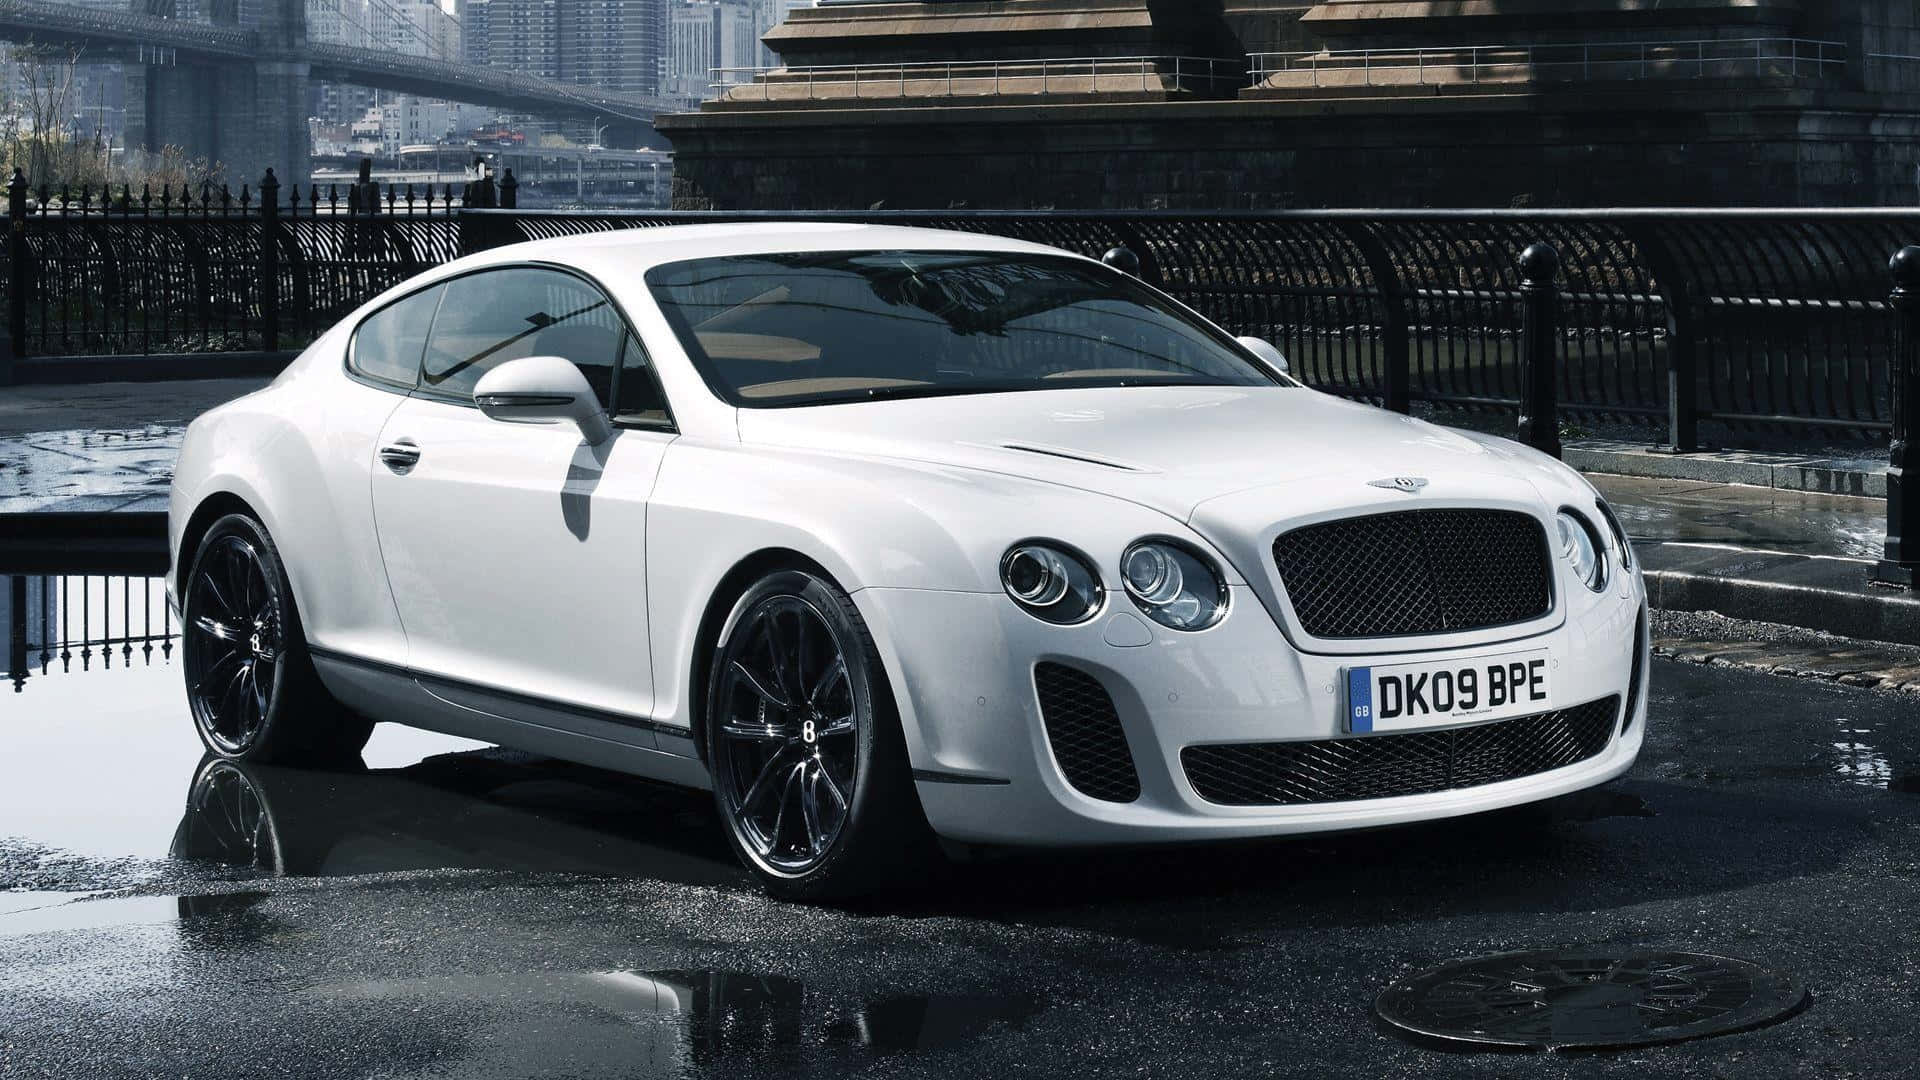 Nyd den luksuriøse køretur i Bentley Sport. Wallpaper